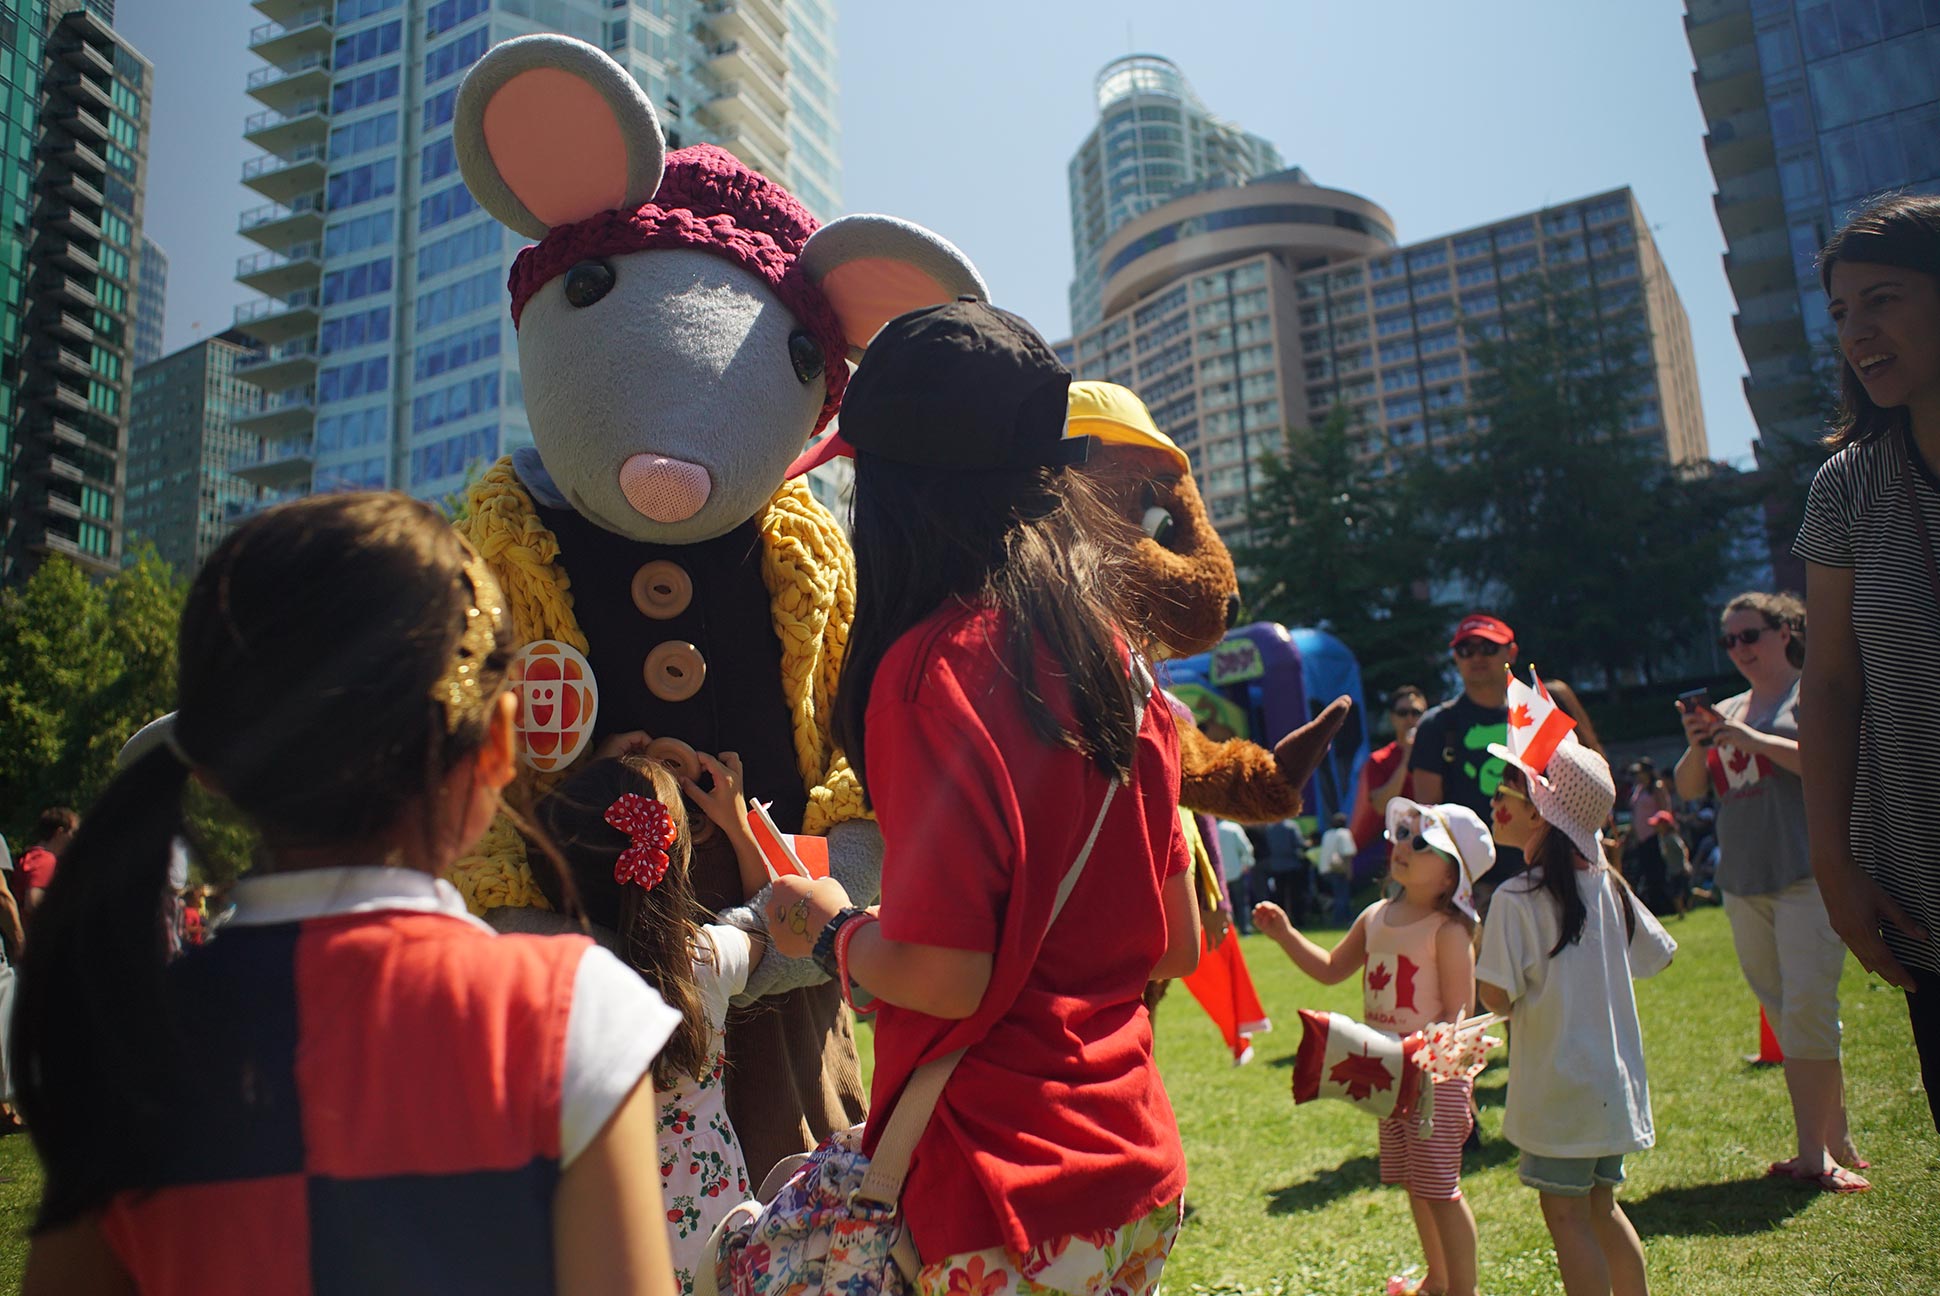 Des mascottes rencontrent des enfants dans une foule